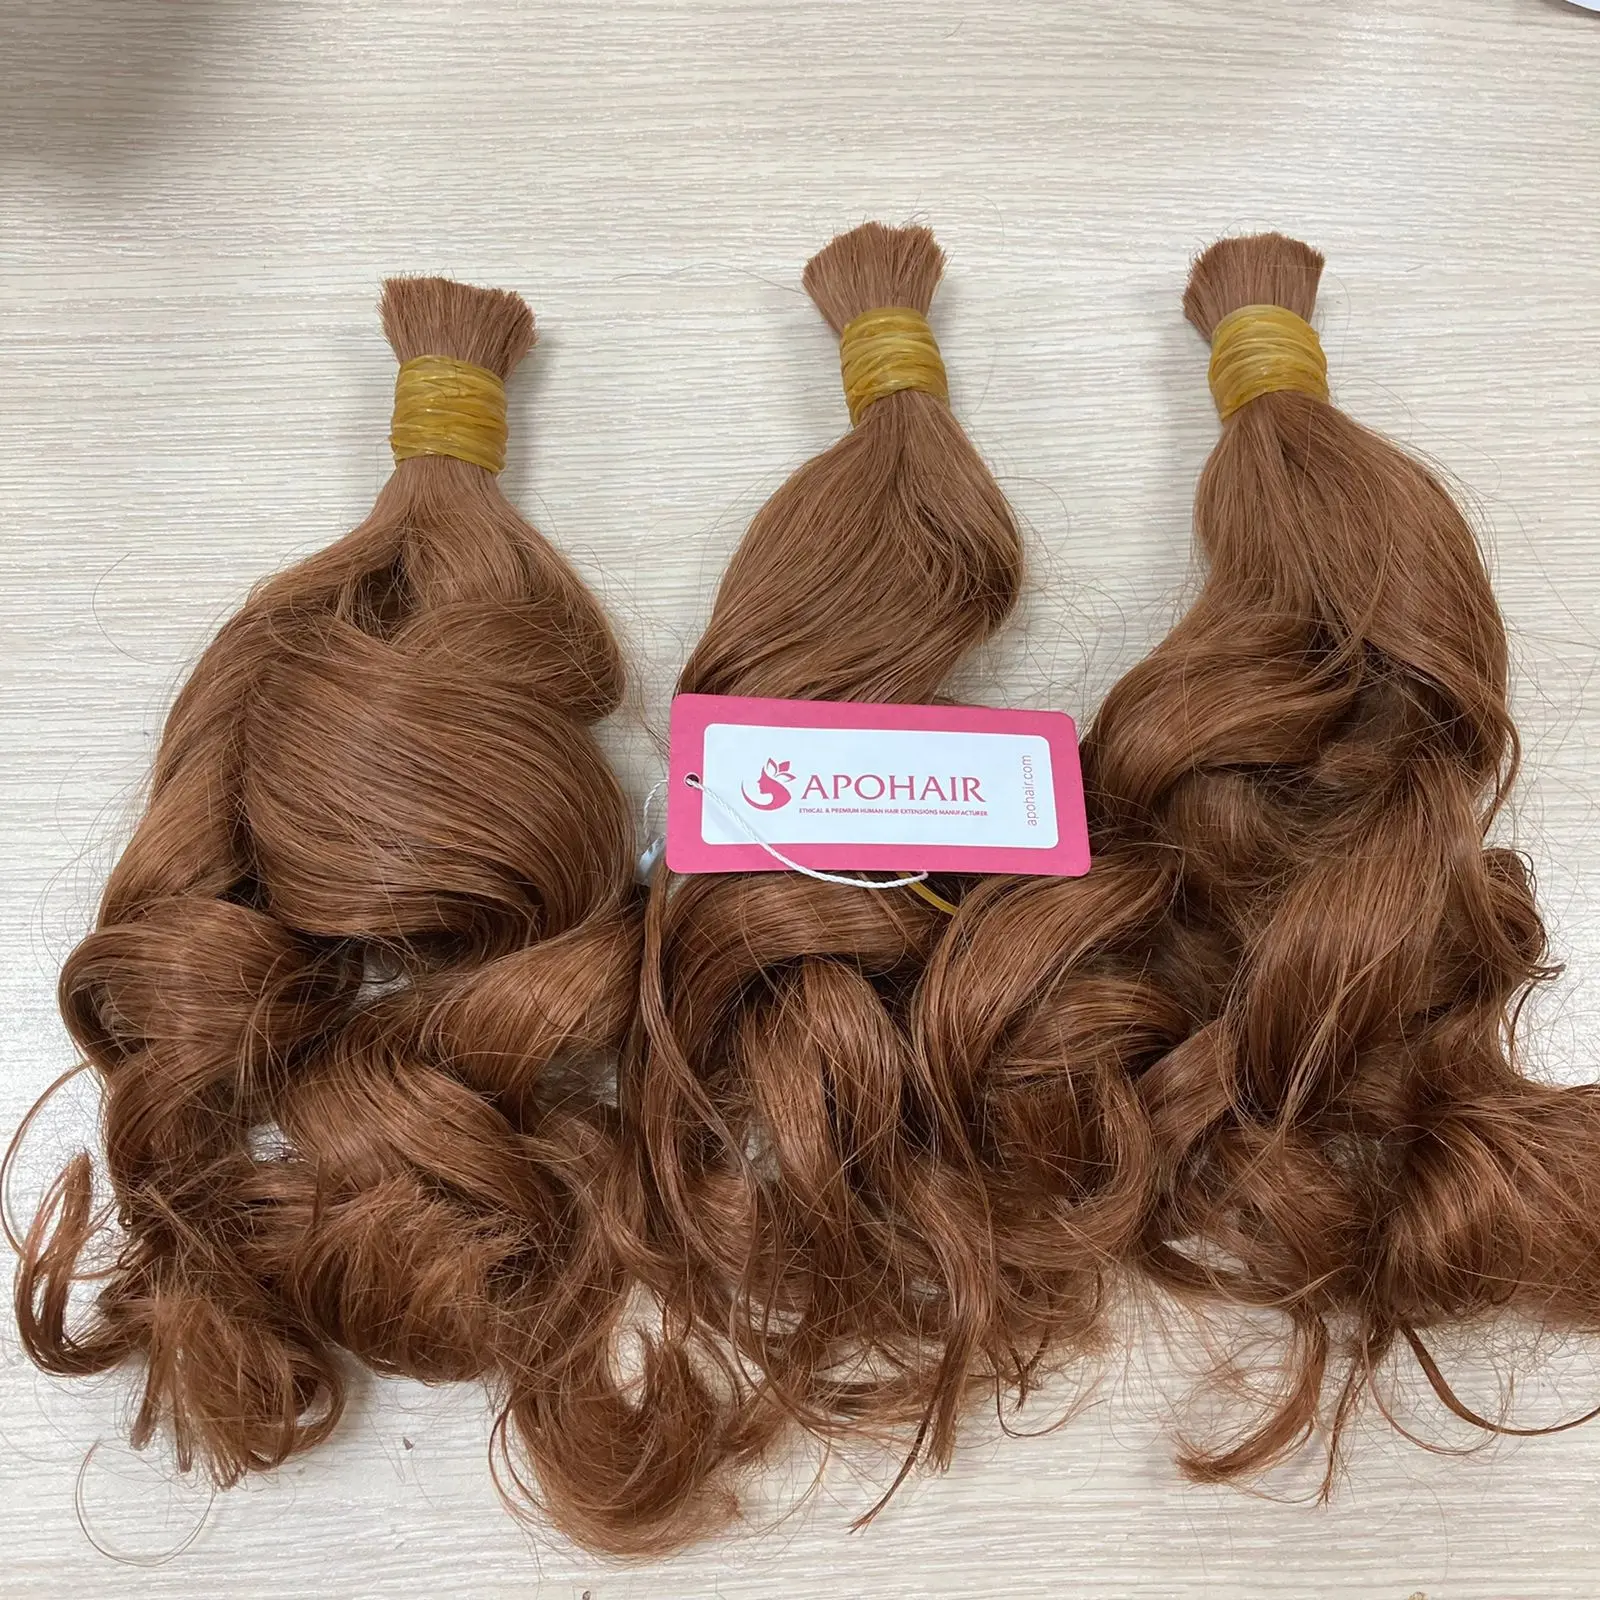 Вьетнамские натуральные волнистые волосы оптом 33H, необработанные волосы, не спутываются, не выпадают, волосы без повреждений